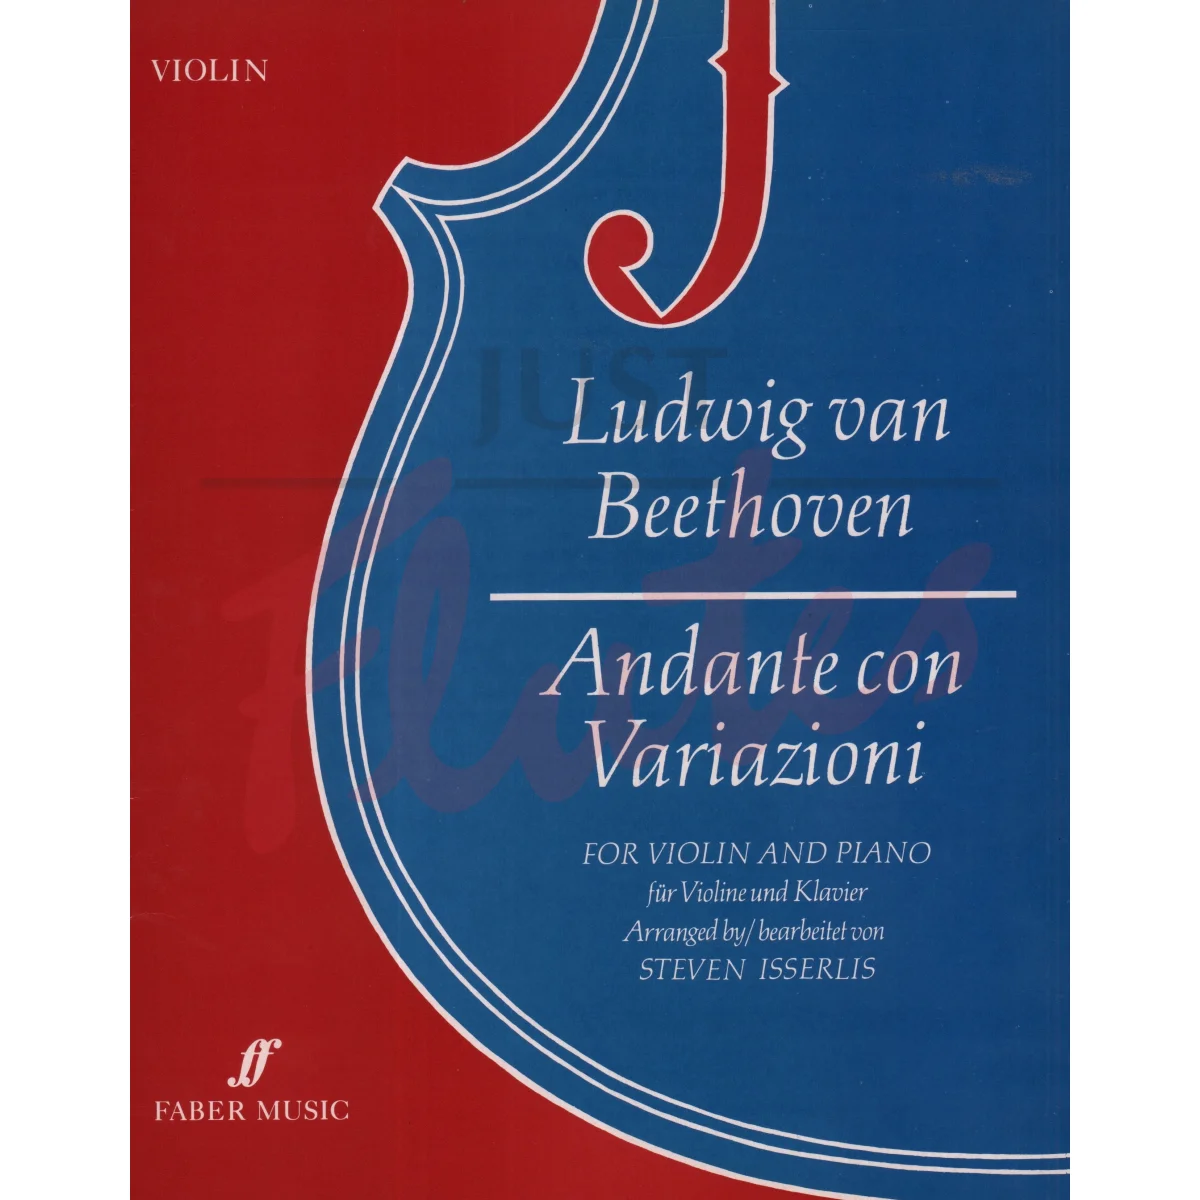 Andante con - Variazioni for Violin and Piano